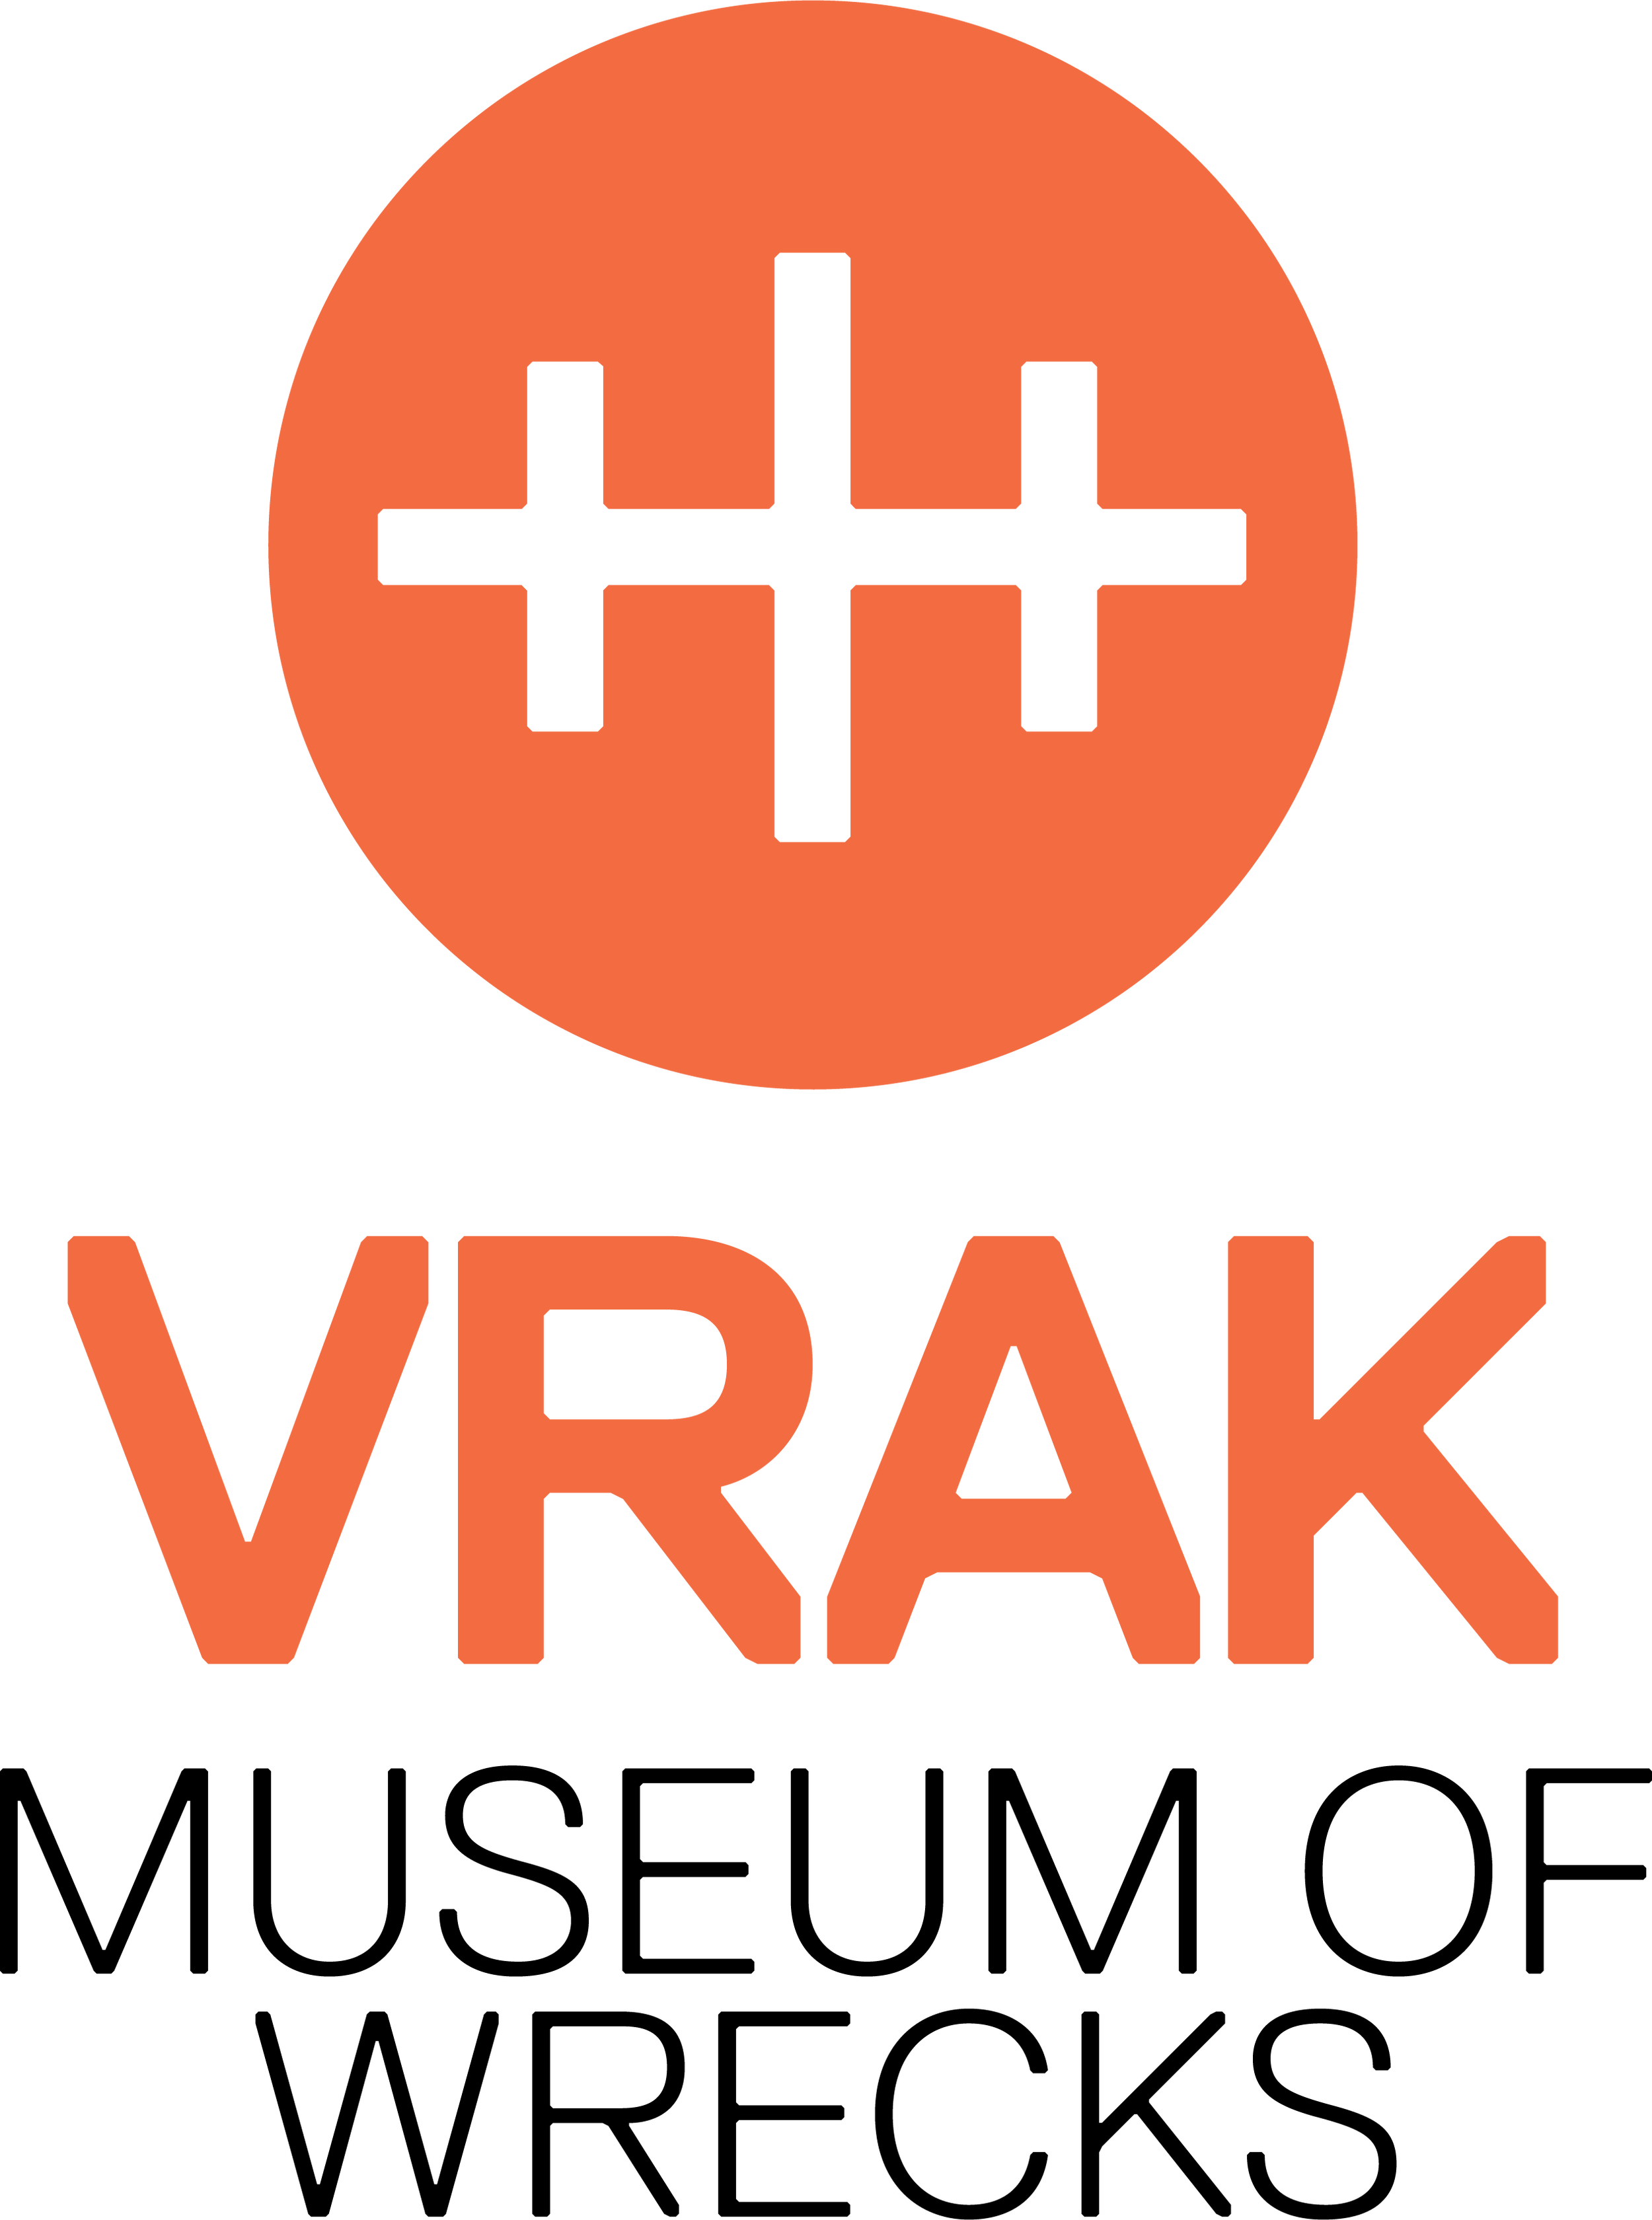 Vrak_st†ende logo_Orange+Svart.png